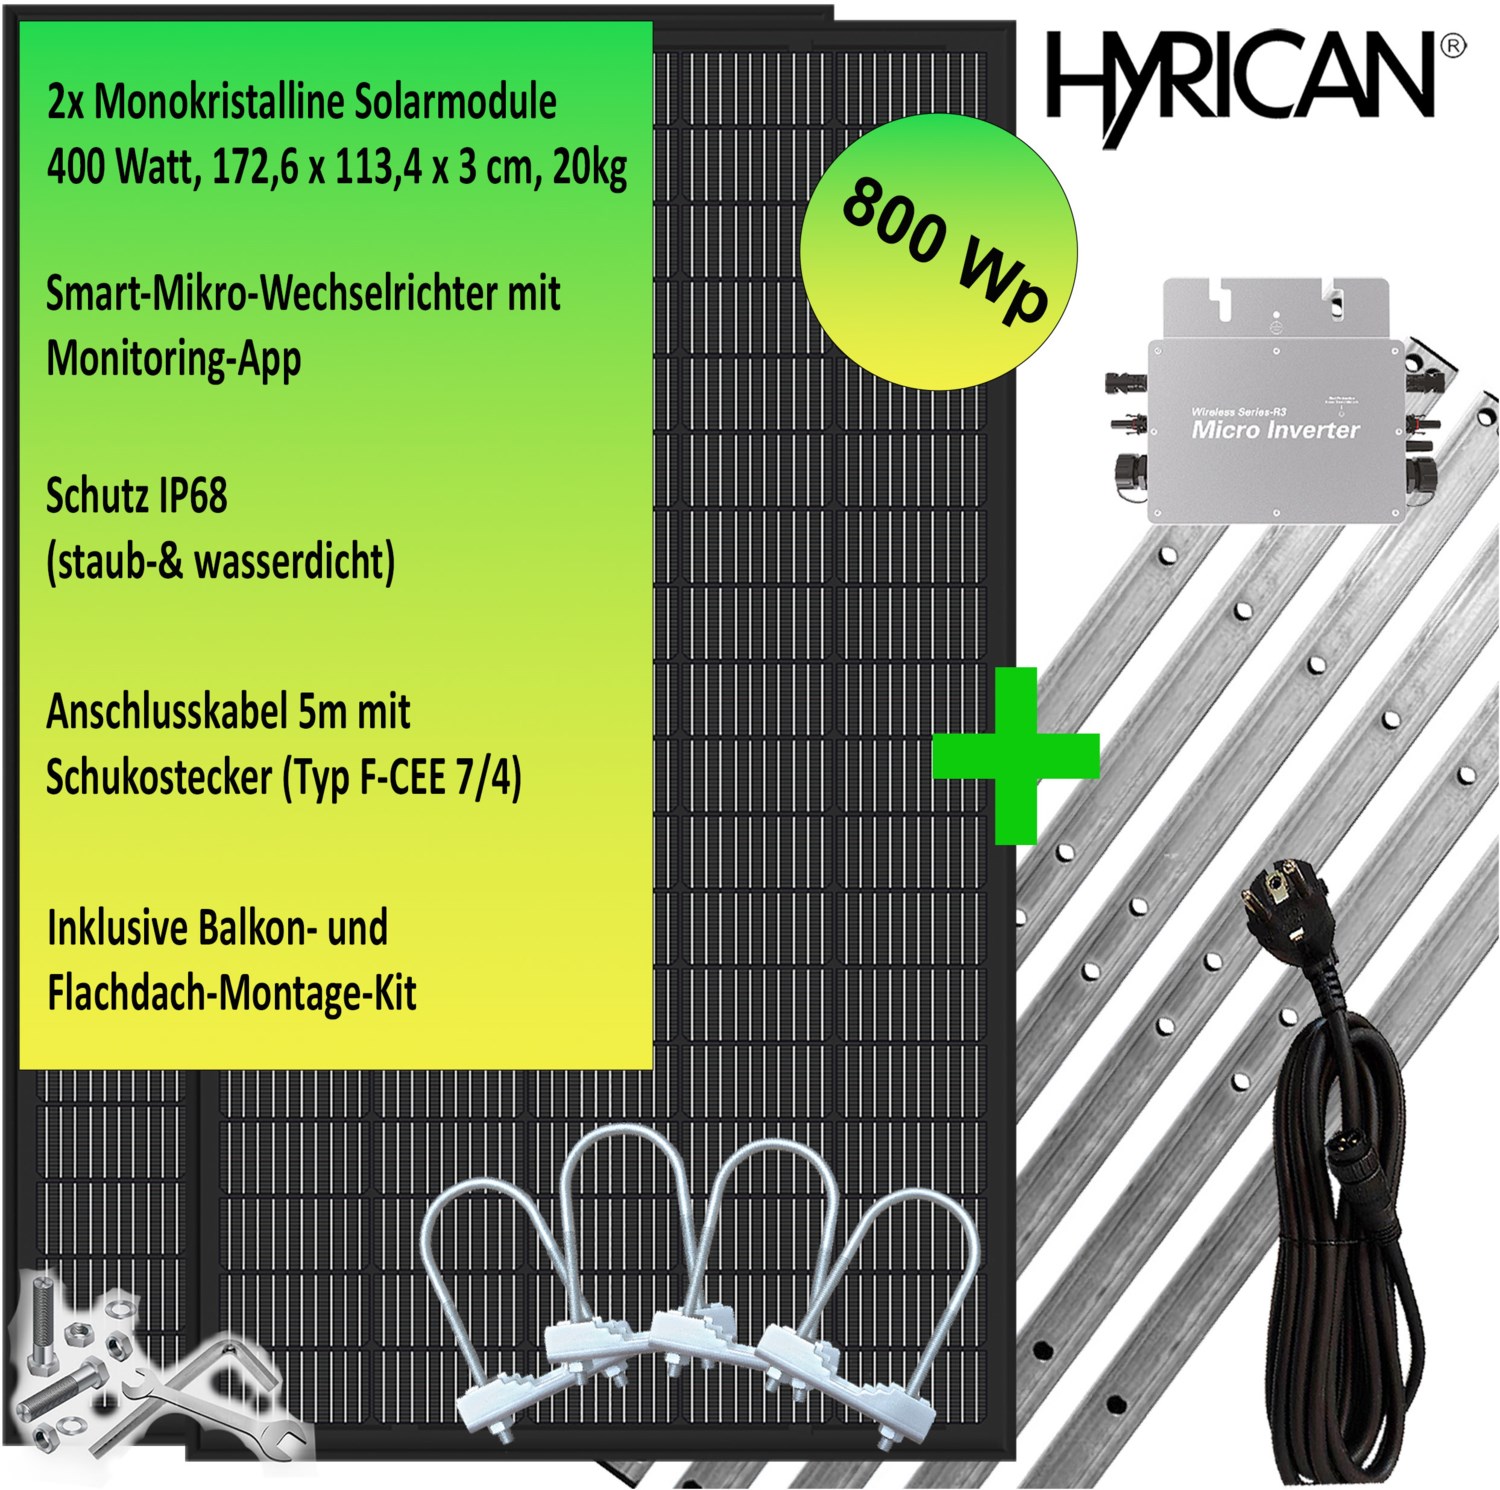 Balkonkraftwerk 800Wp inkl. Montage-Kit schwarz/silber von Hyrican